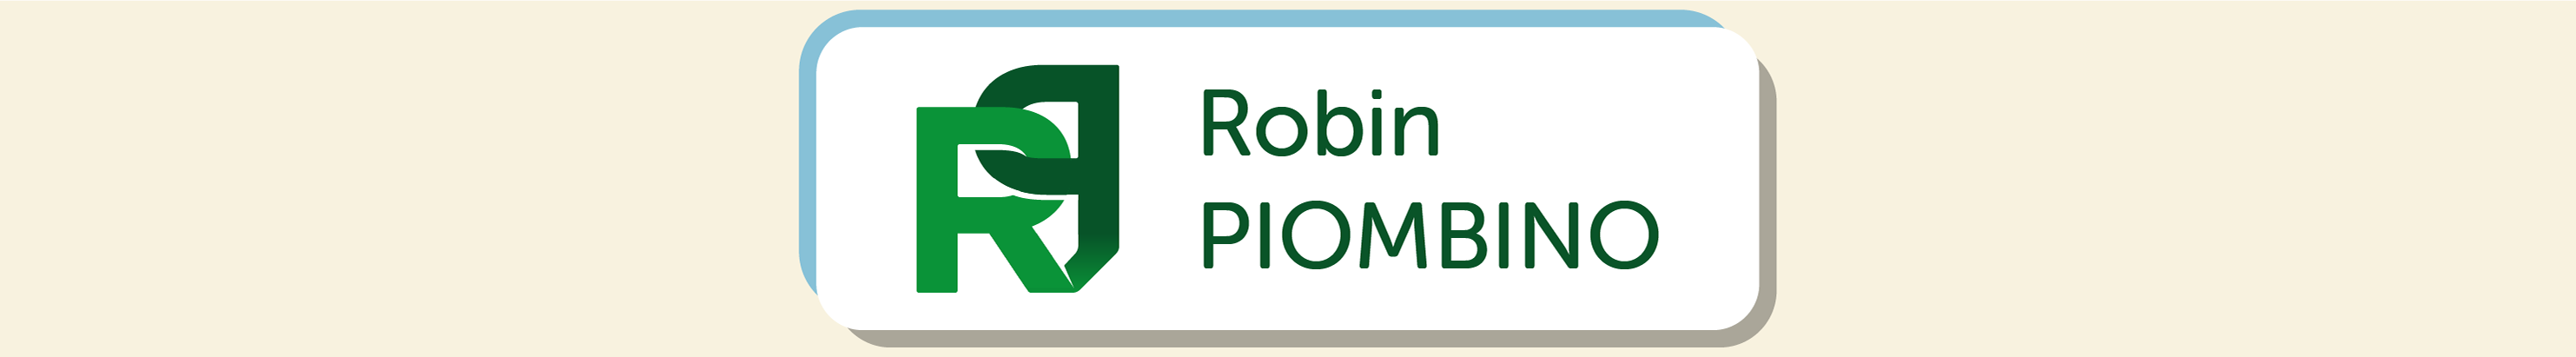 Robin PIOMBINO's profile banner